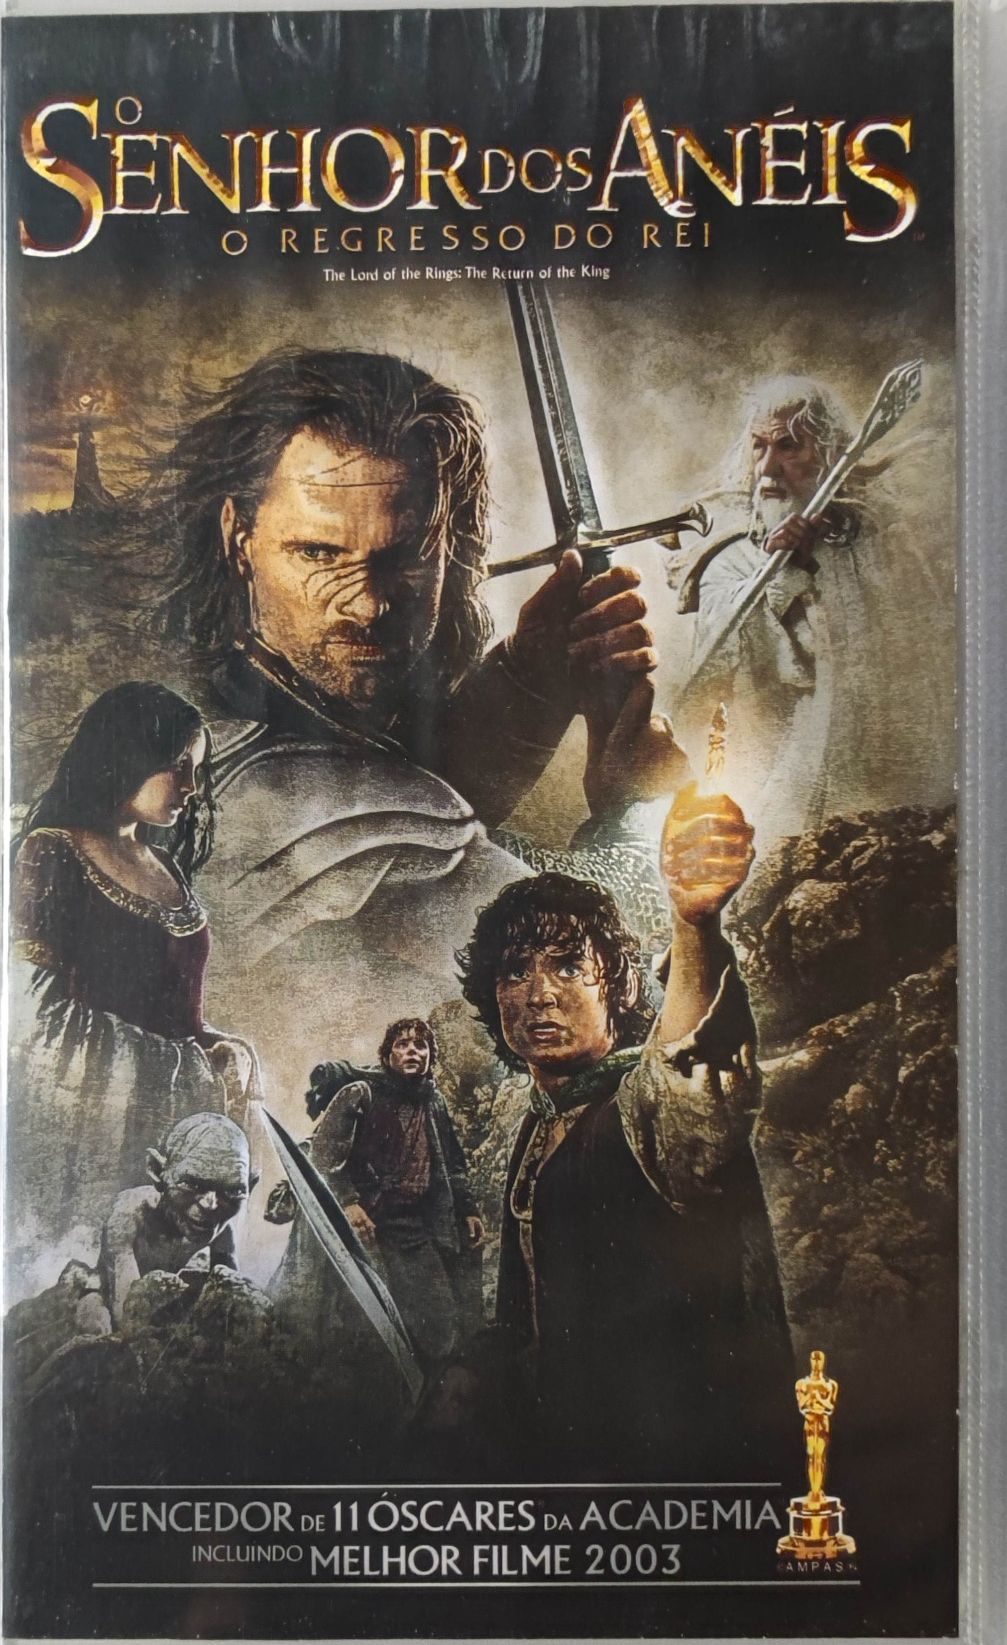 VHS - O Senhor dos Anéis - O Regresso Do Rei